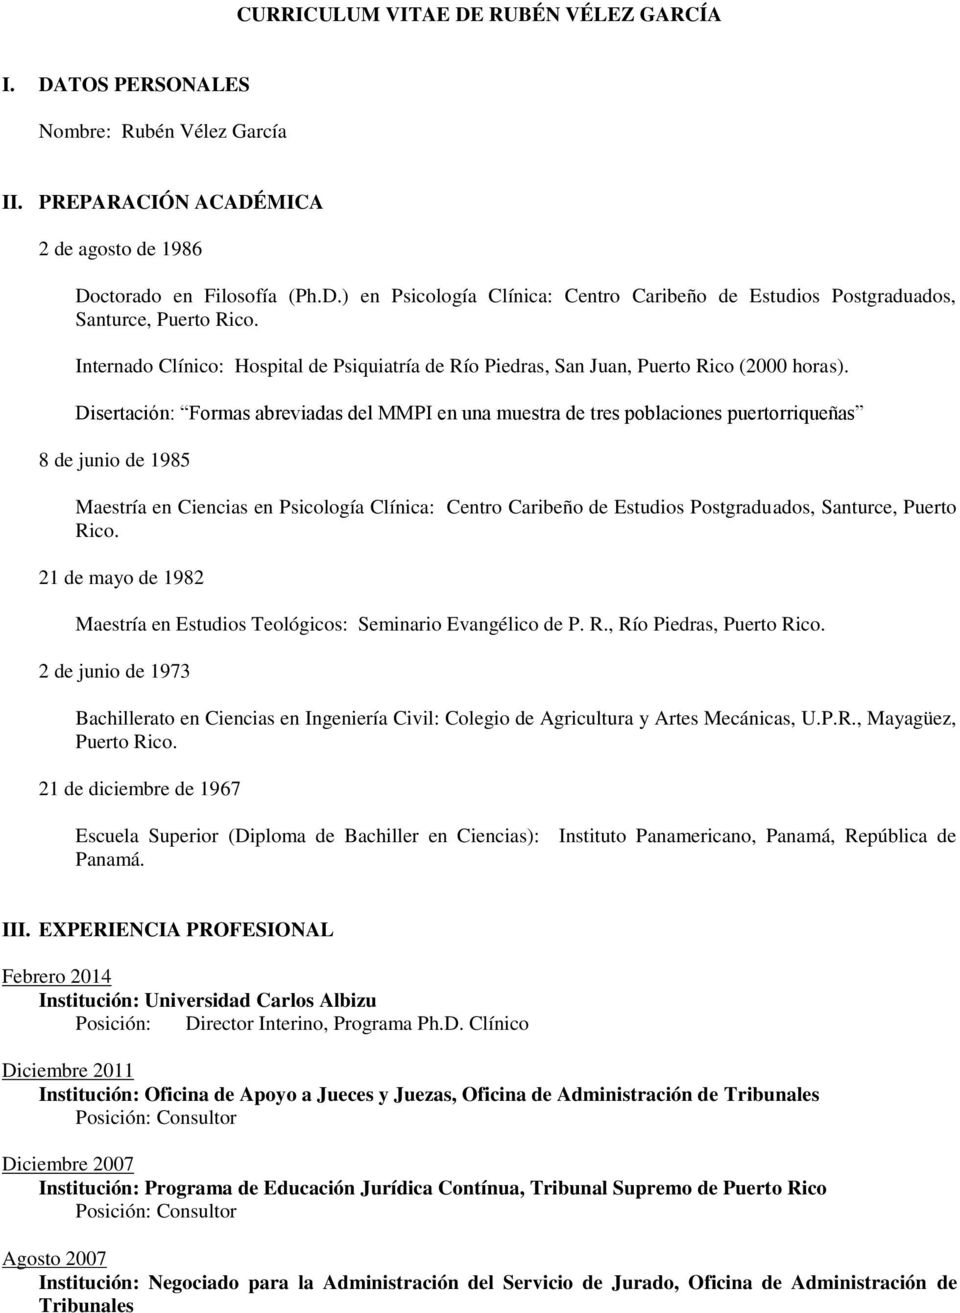 Curriculum Ingenieria Civil Universidad Politecnica De Puerto Rico